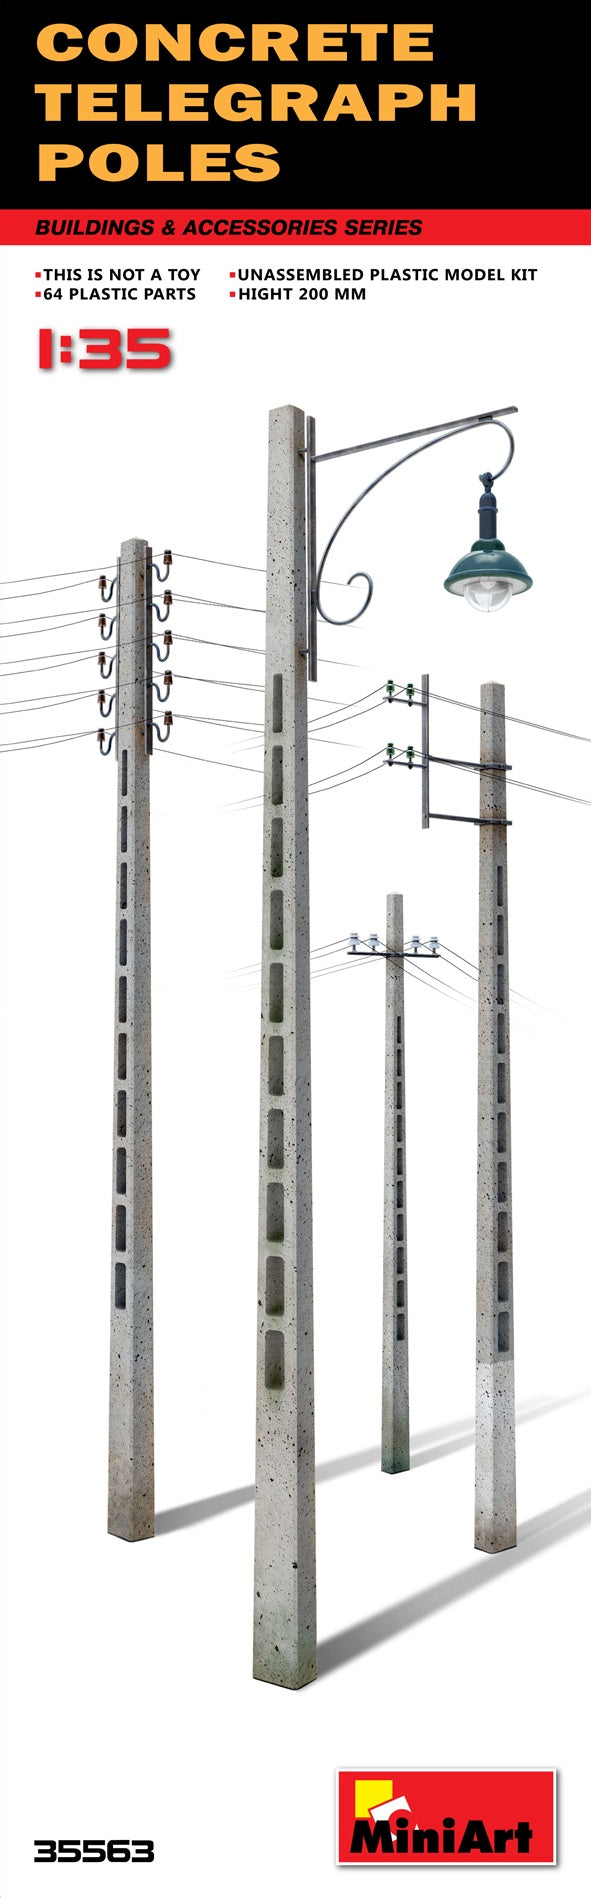 Miniart 1:35 Concrete Telegraph Poles